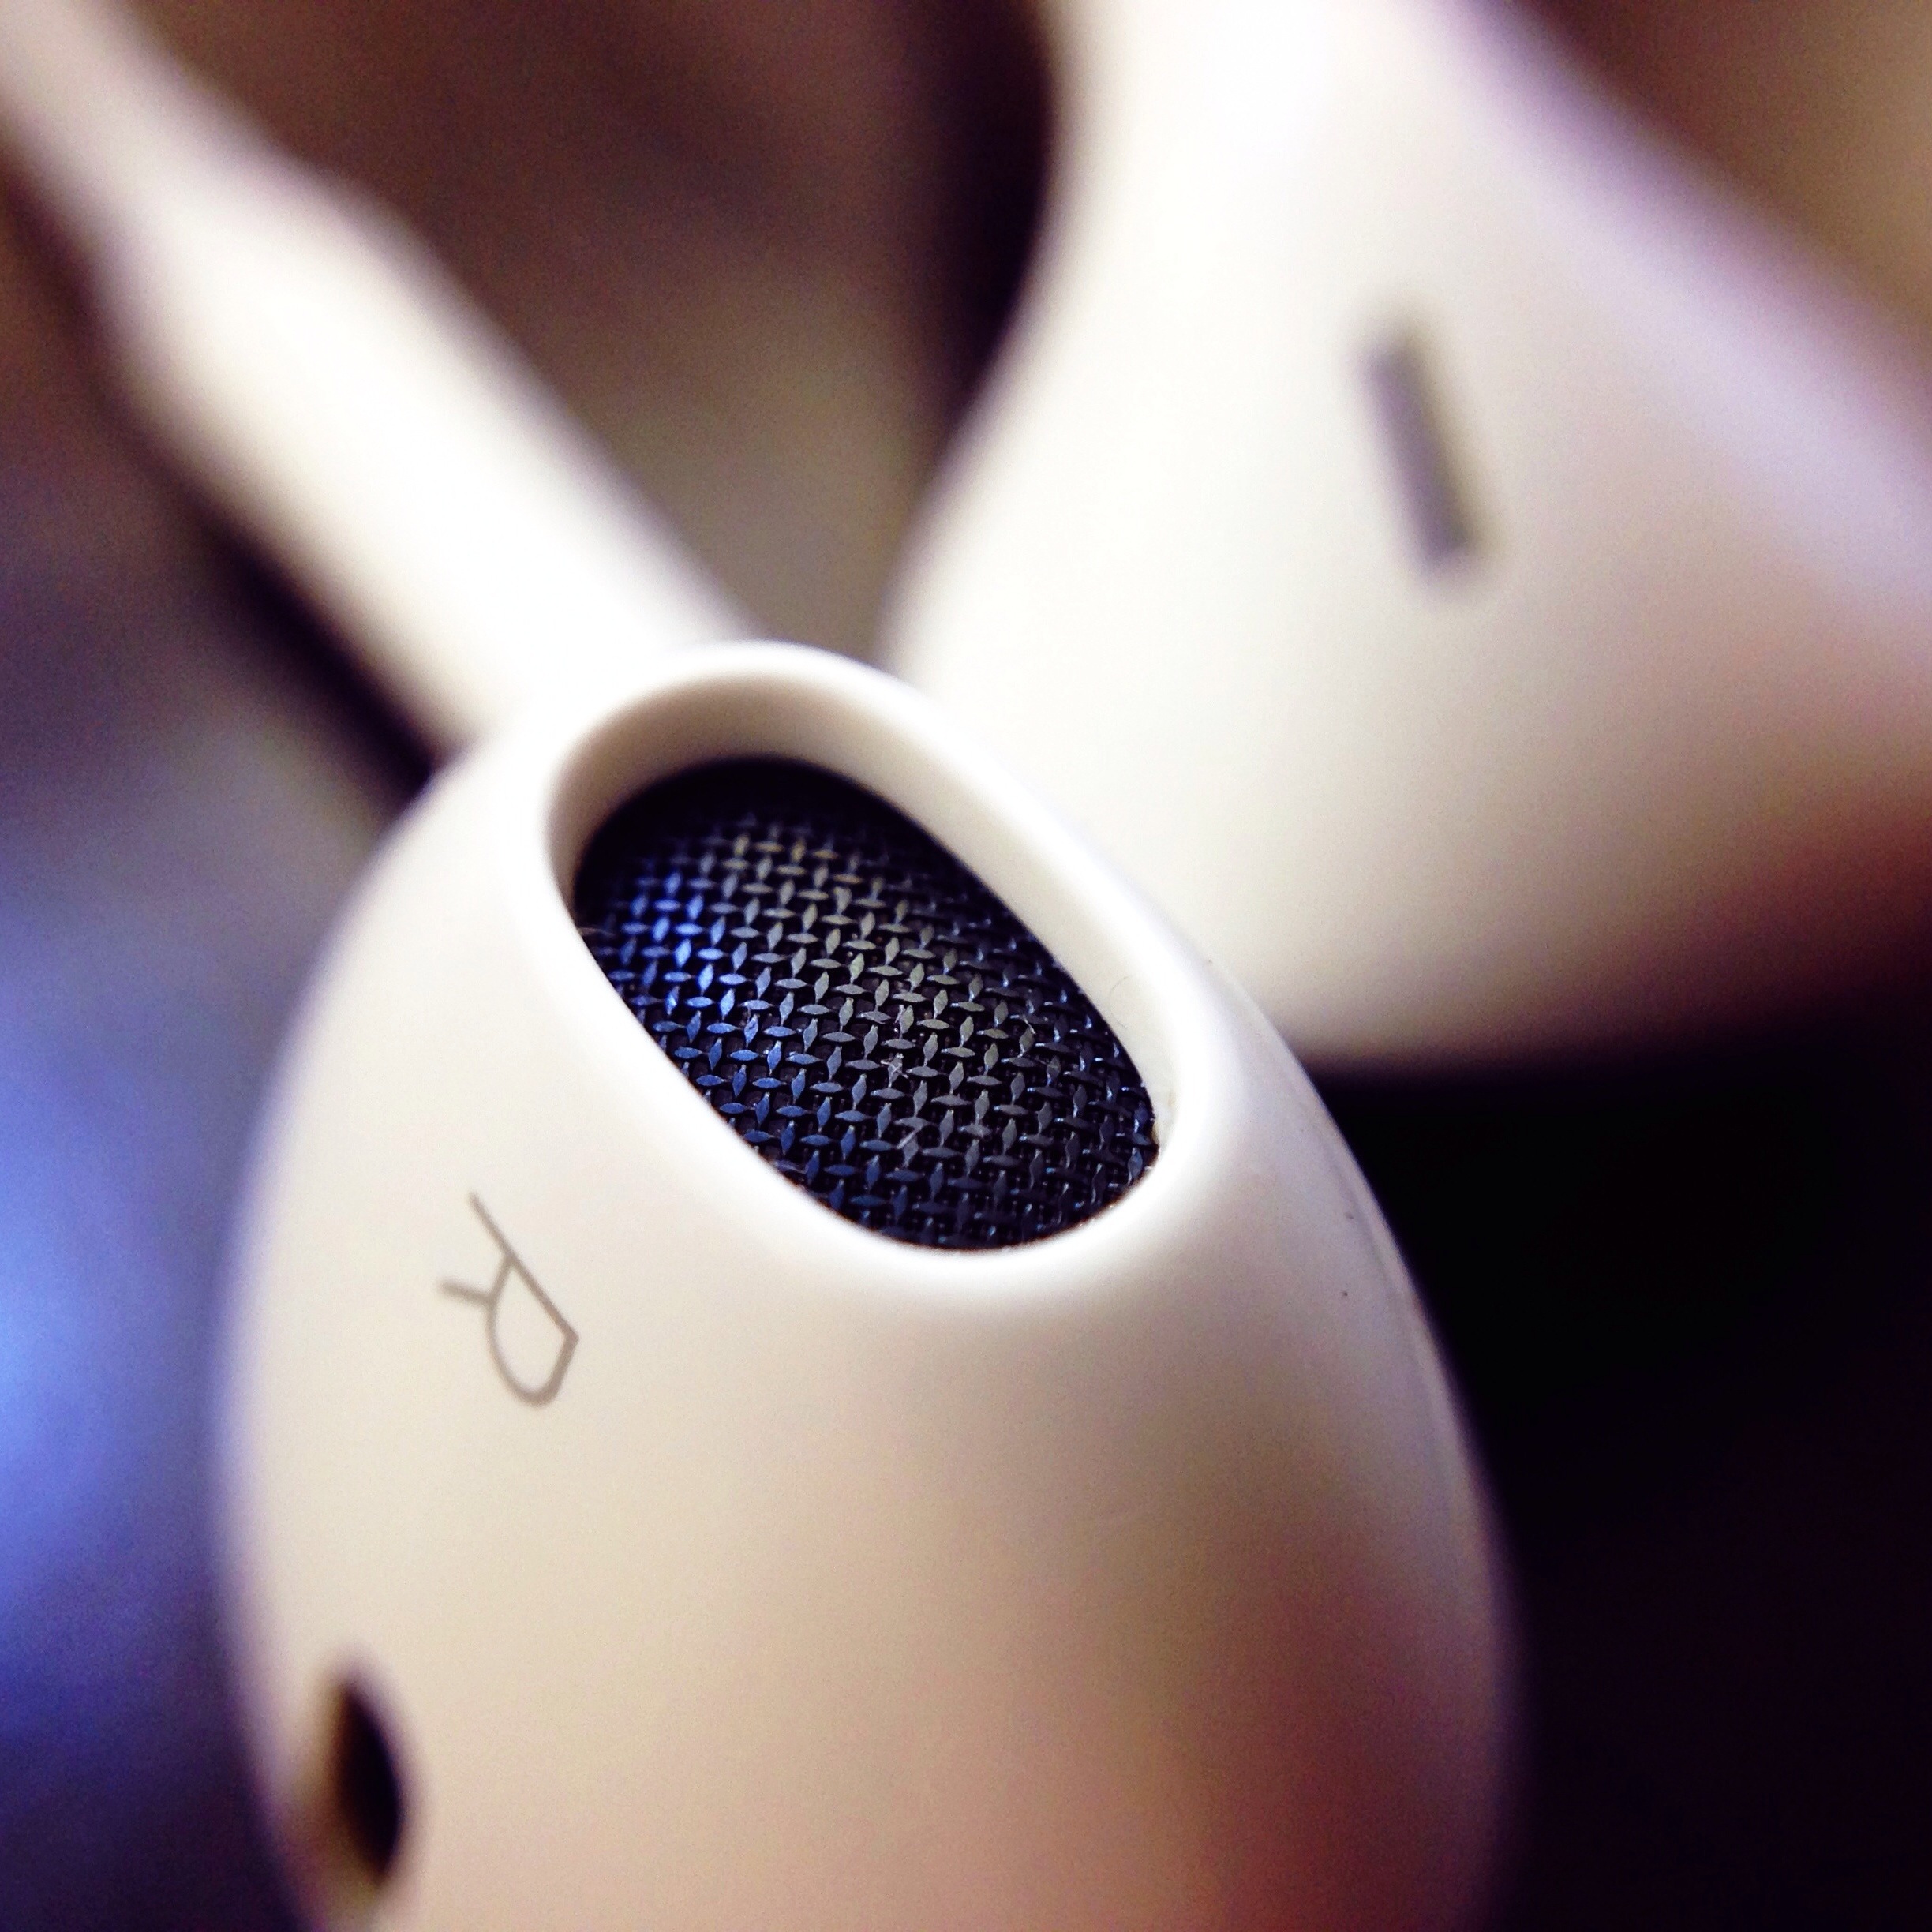 Foto: Earpods-Kopfhörer von Apple (Nahaufnahme)